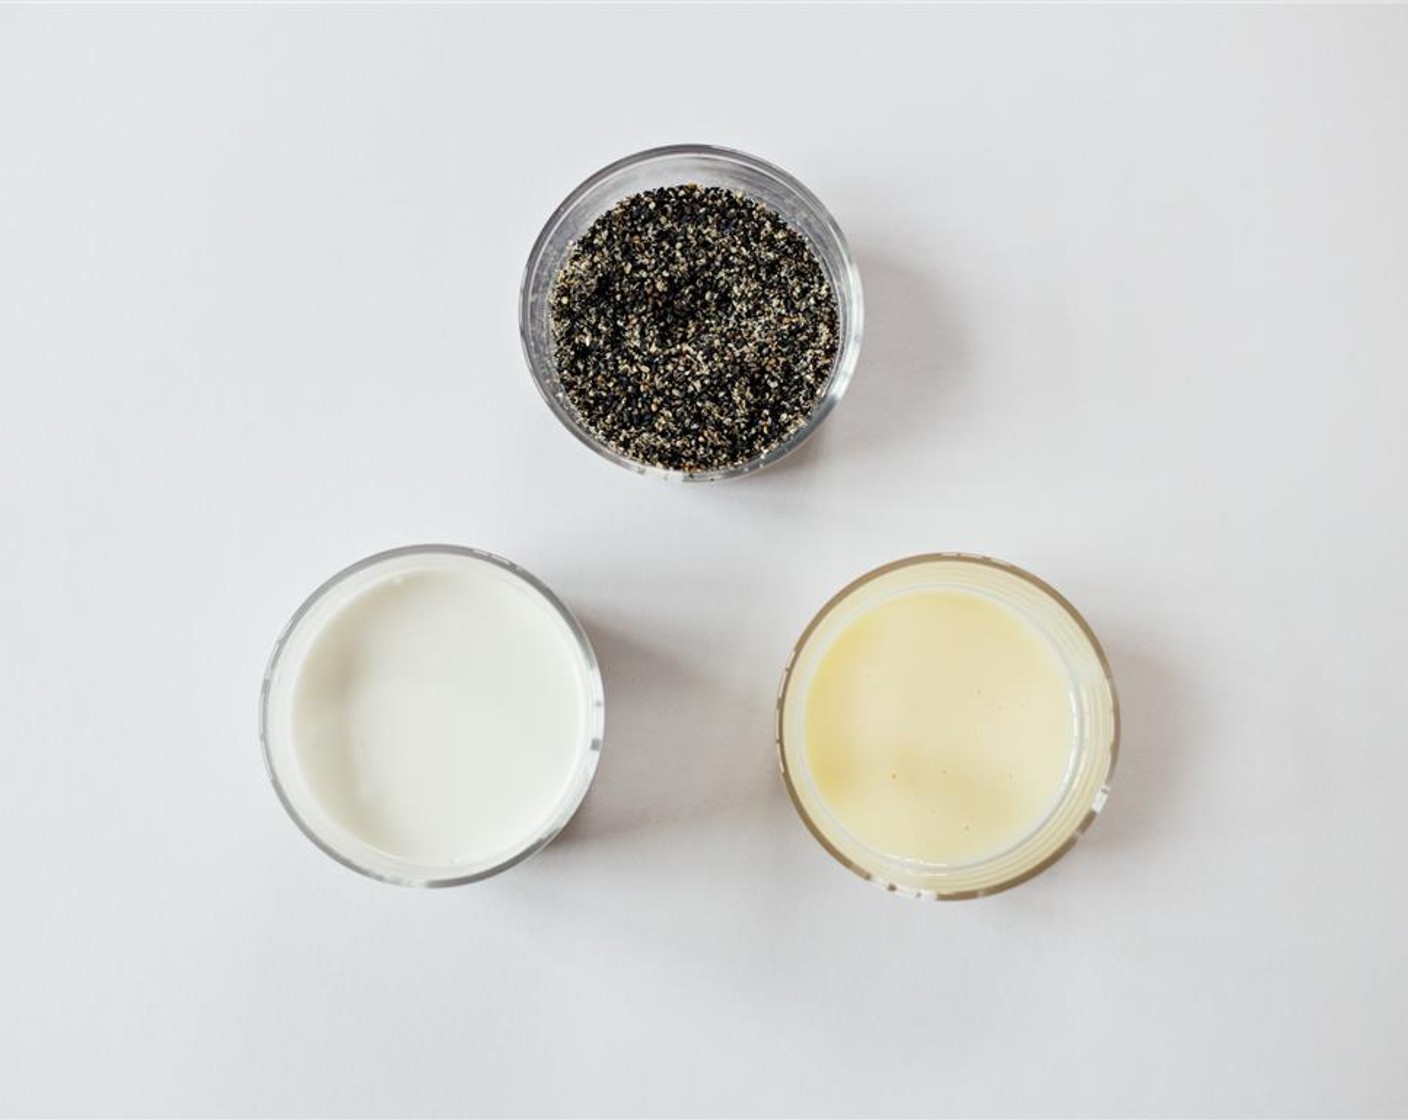 step 1 Grind up the Black Sesame Seeds (1/2 cup) using a blender or food processor.